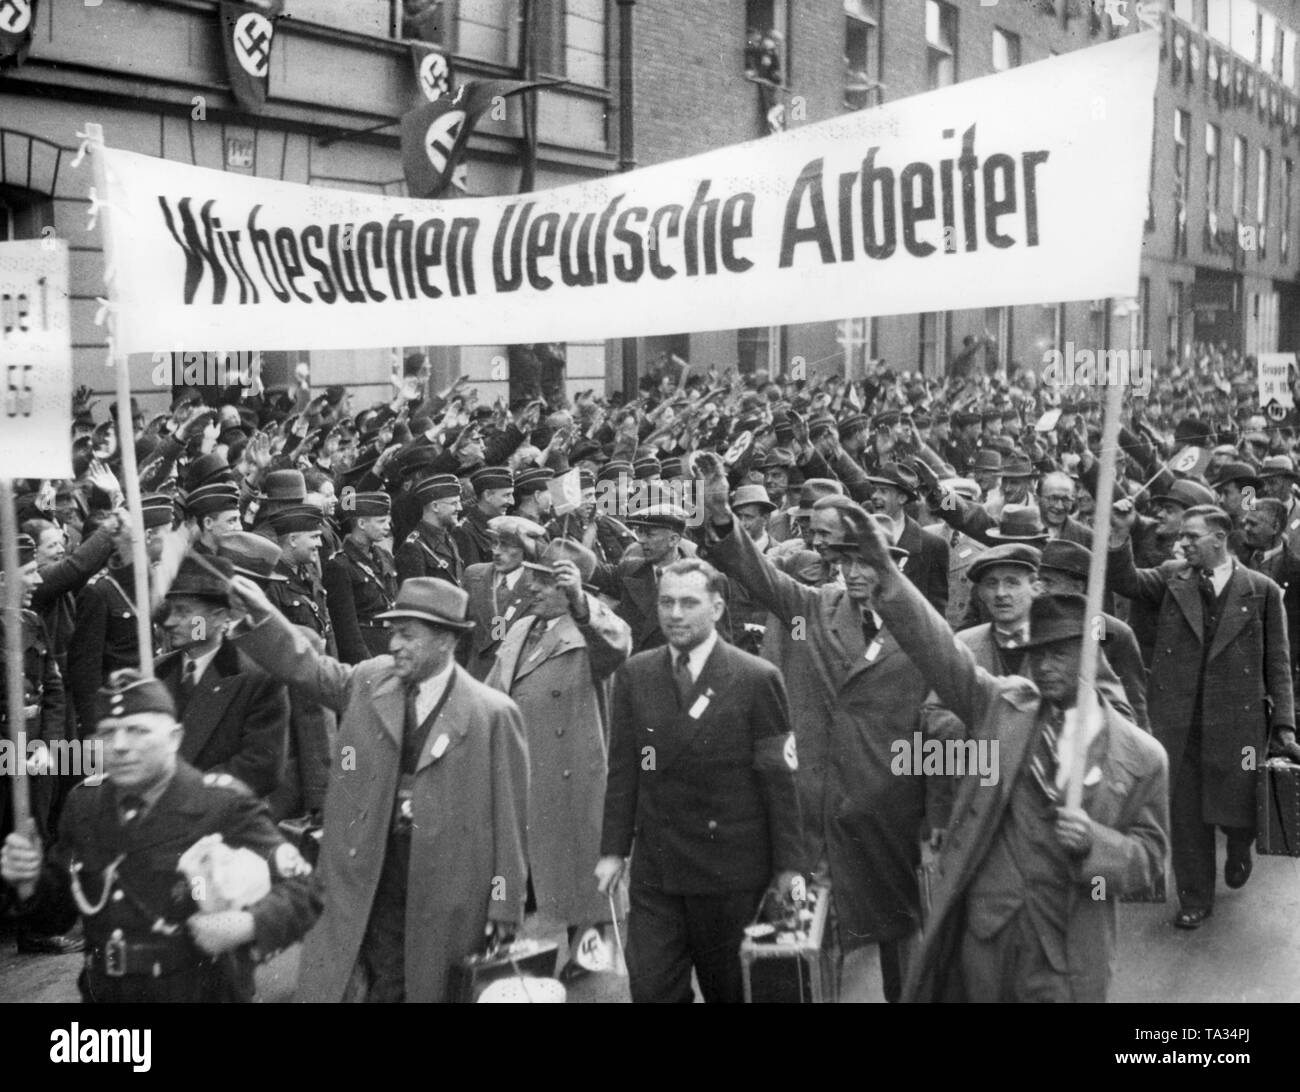 Nach dem Anschluss Österreichs, 2000 Wiener Arbeitnehmer mit besonderen Züge am Anhalter Bahnhof in Berlin kamen für eine Reise organisiert von der NS-Organisation "Kraft durch Freude" ('Stärke durch Freude"). Hier sind Sie marschieren zu ihren Quartieren. In der Front, ein Banner mit der Aufschrift "Wir besuchen die deutschen Arbeiter". Stockfoto